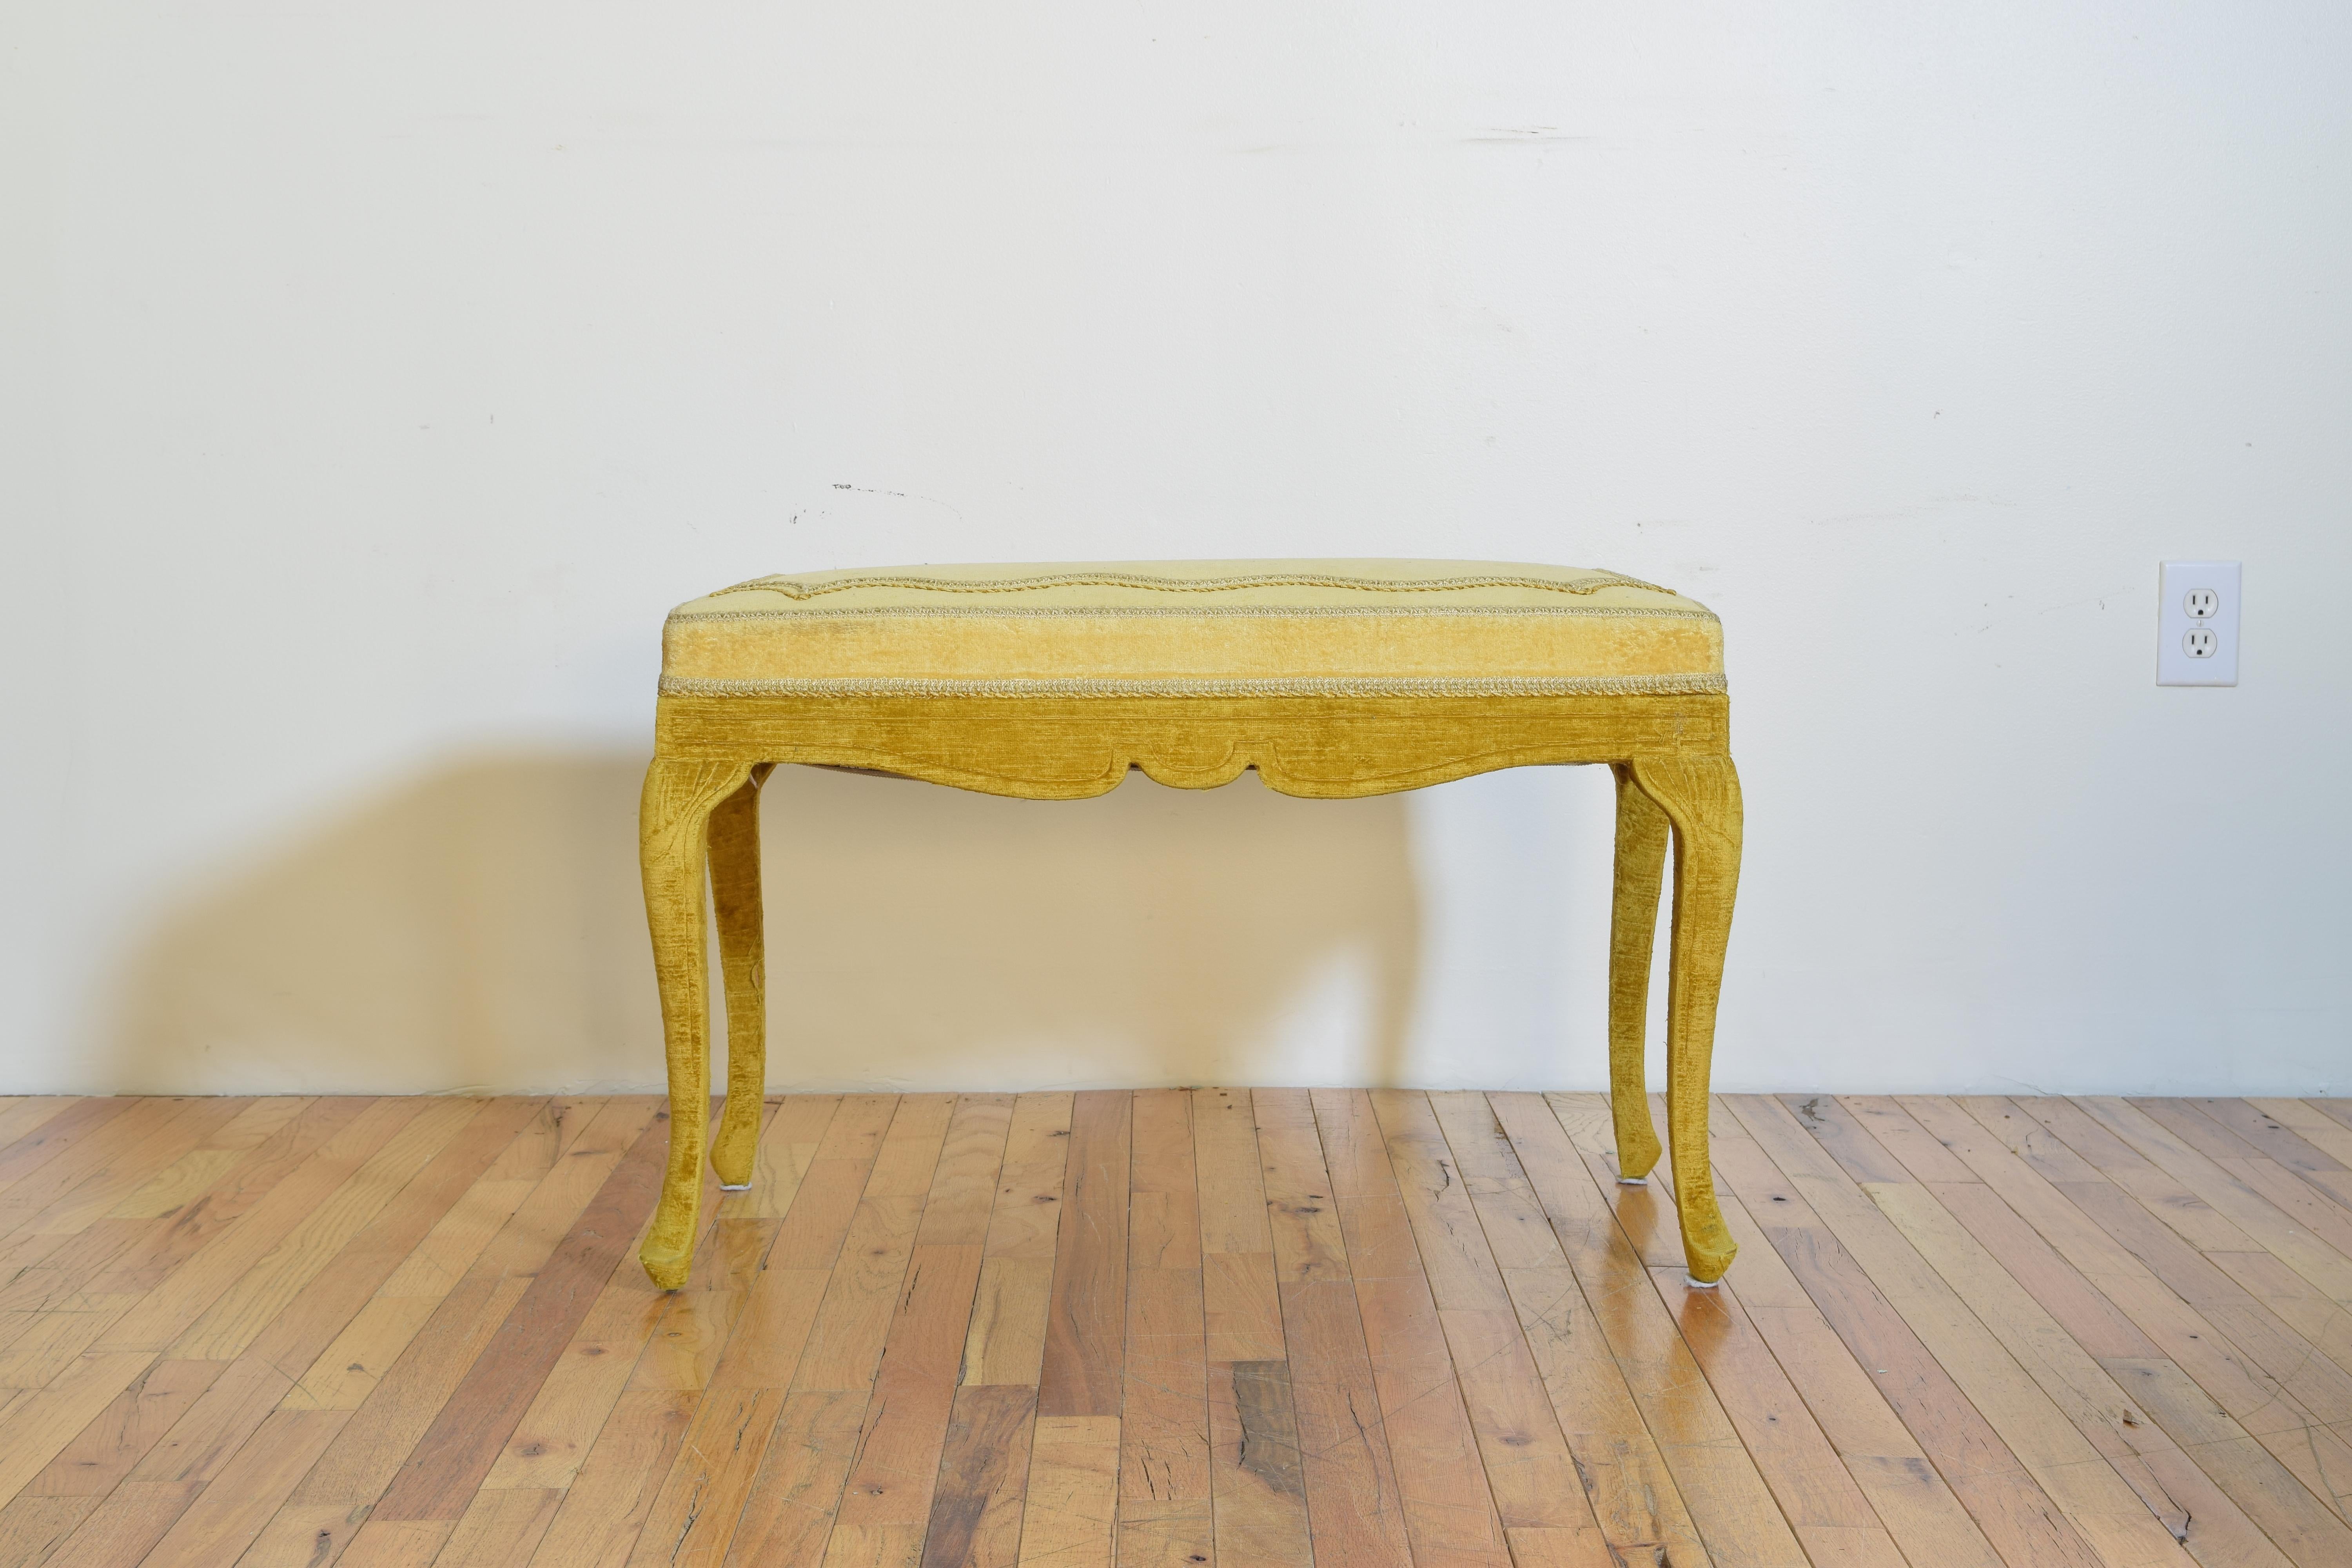 Italian Rococo Inspired Velvet Upholstered Bench, Early 20th Century (Neurokoko)